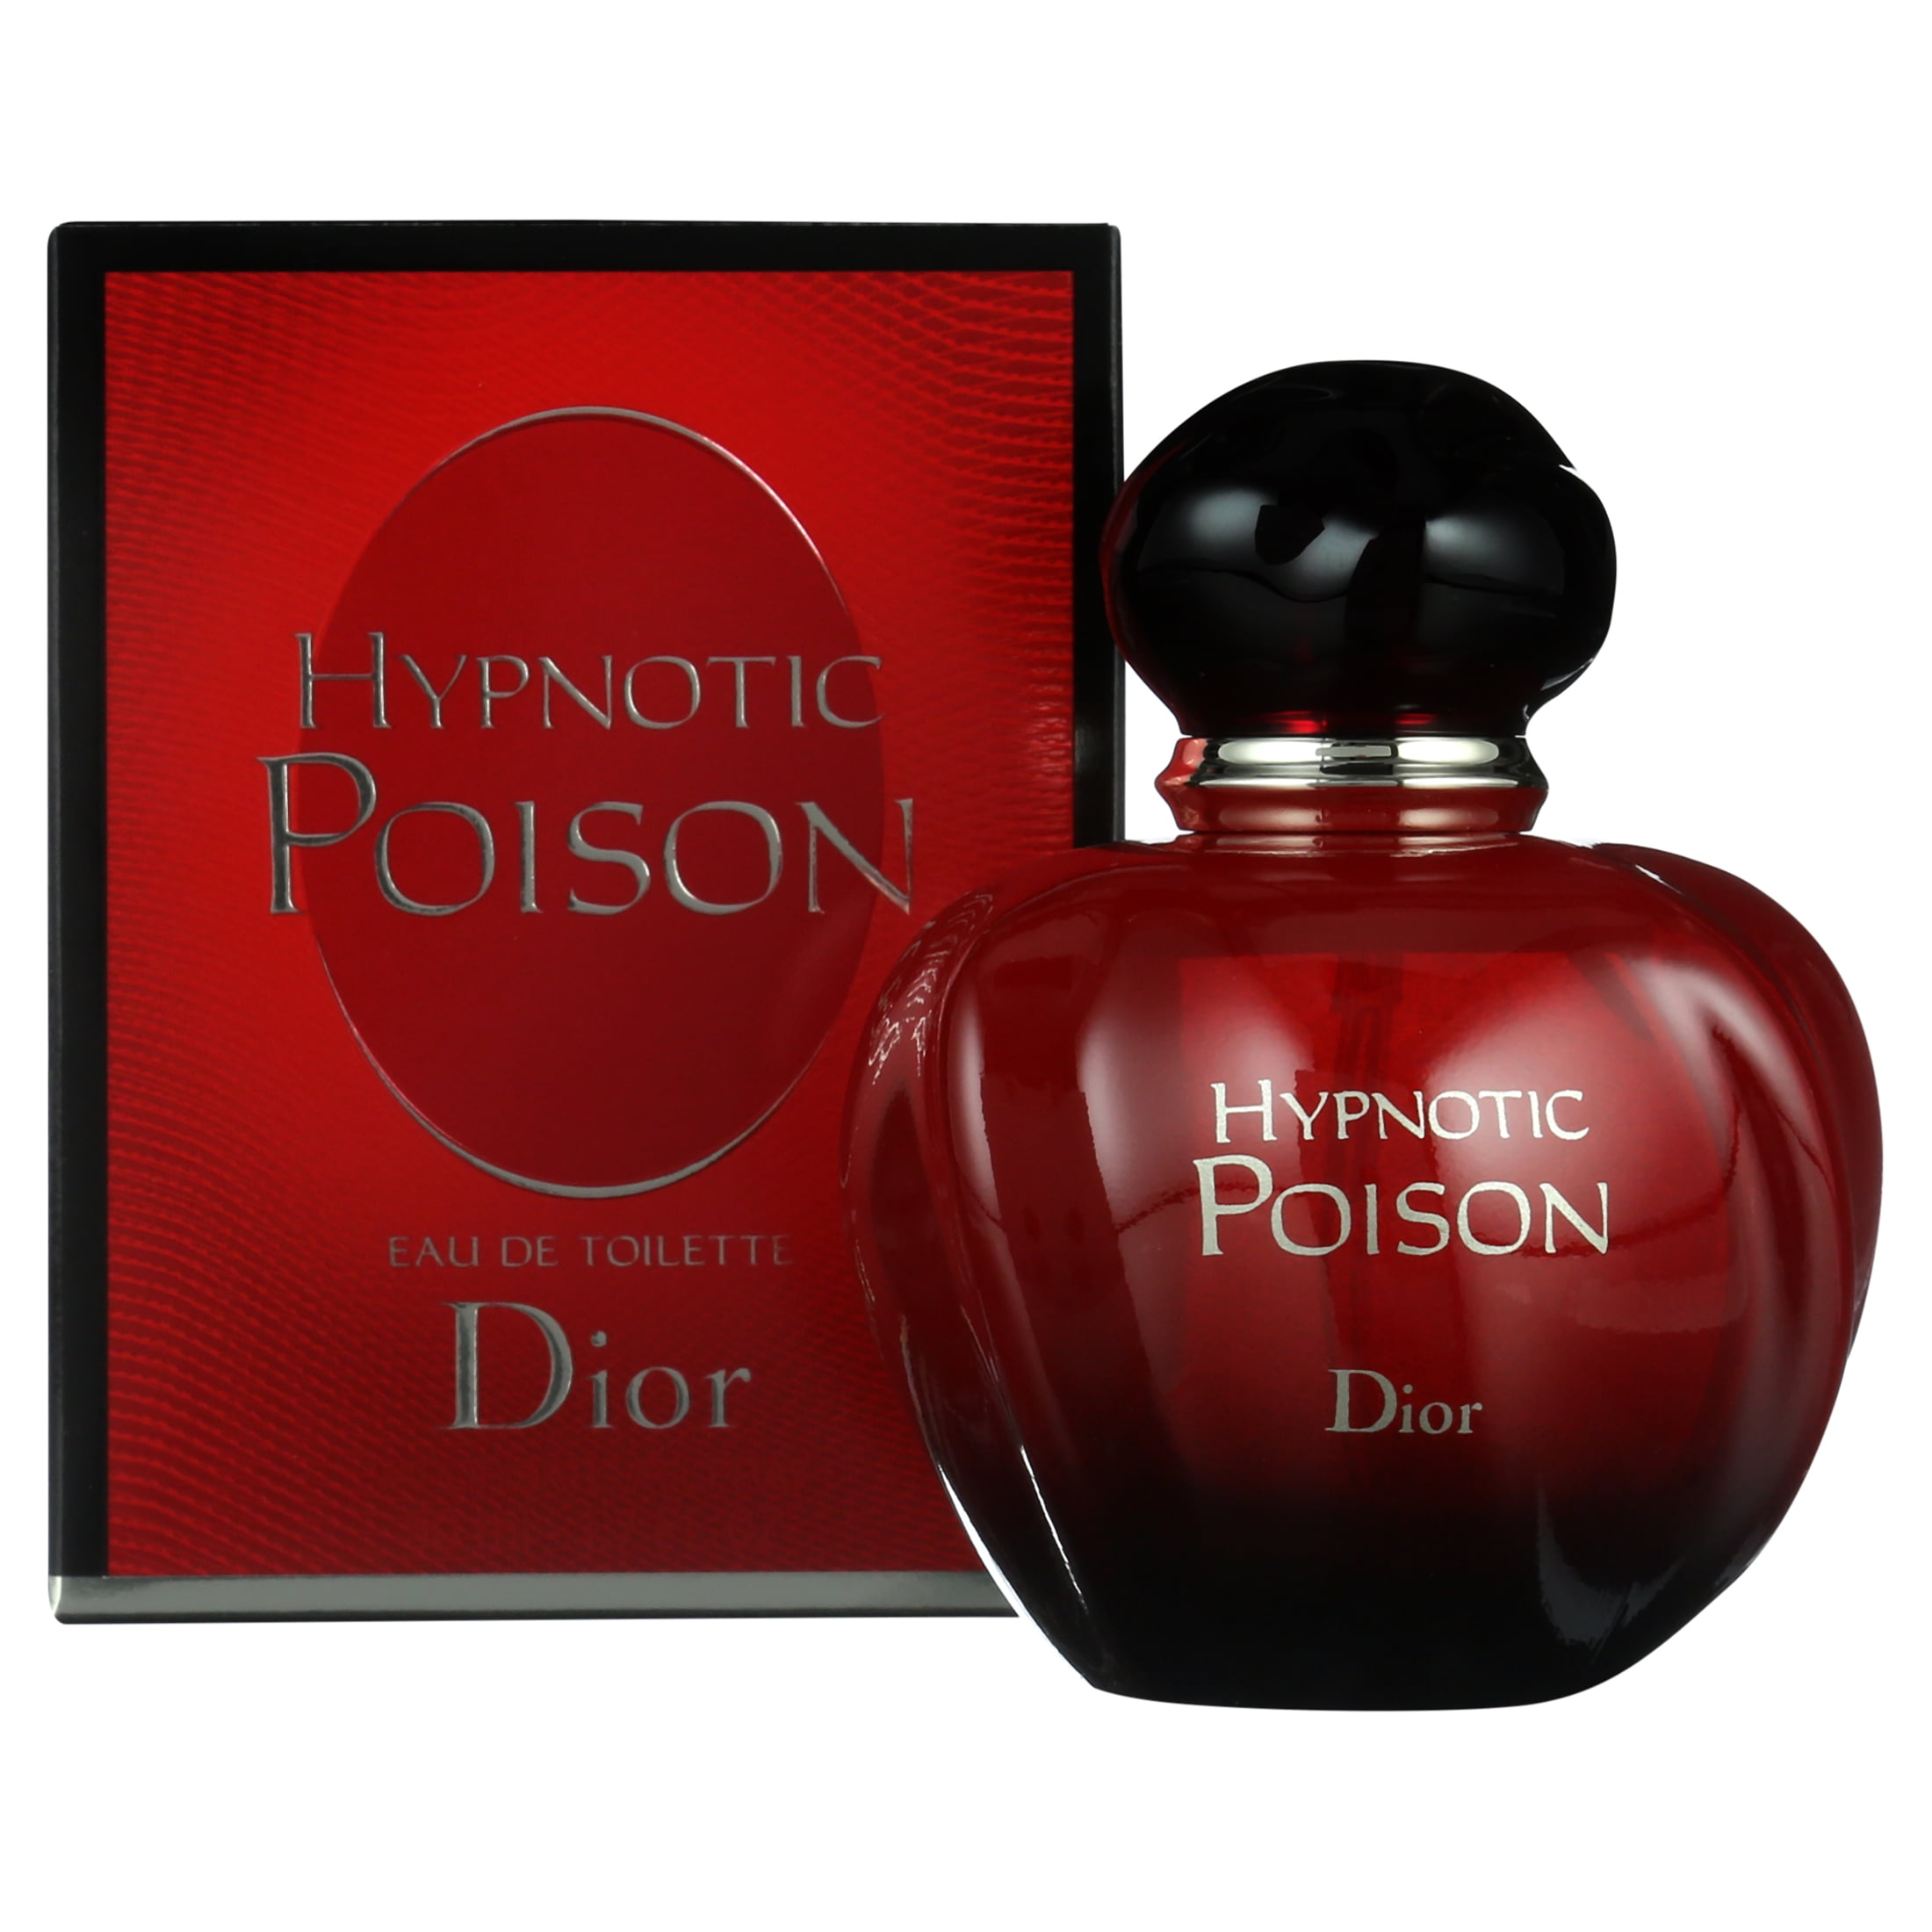 Dior Hypnotic Poison Eau de Toilette, Perfume for Women, 1.7 Oz -  Walmart.com